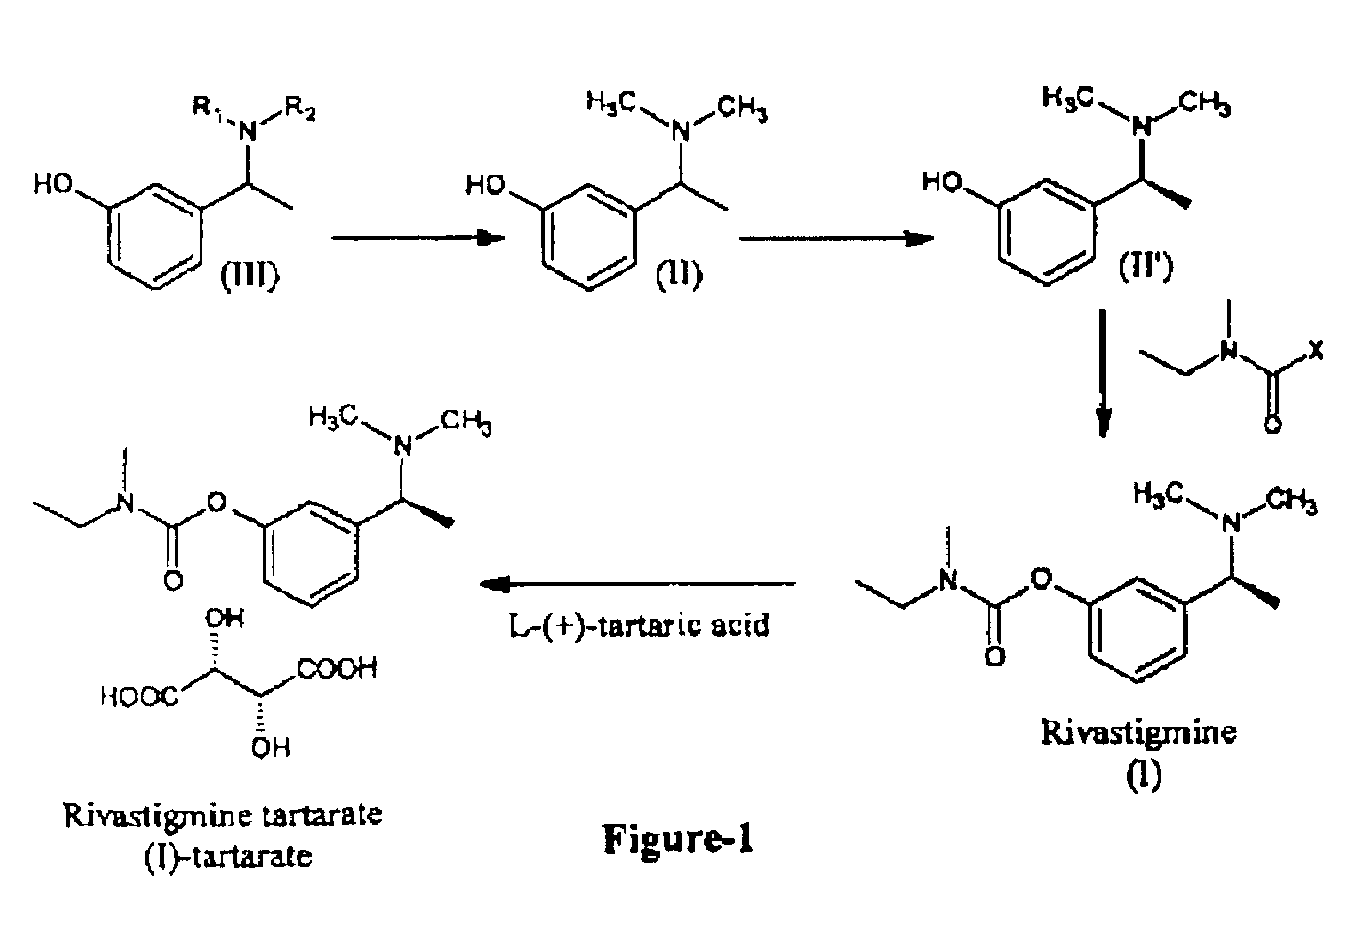 Process for the preparation of Rivastigmine